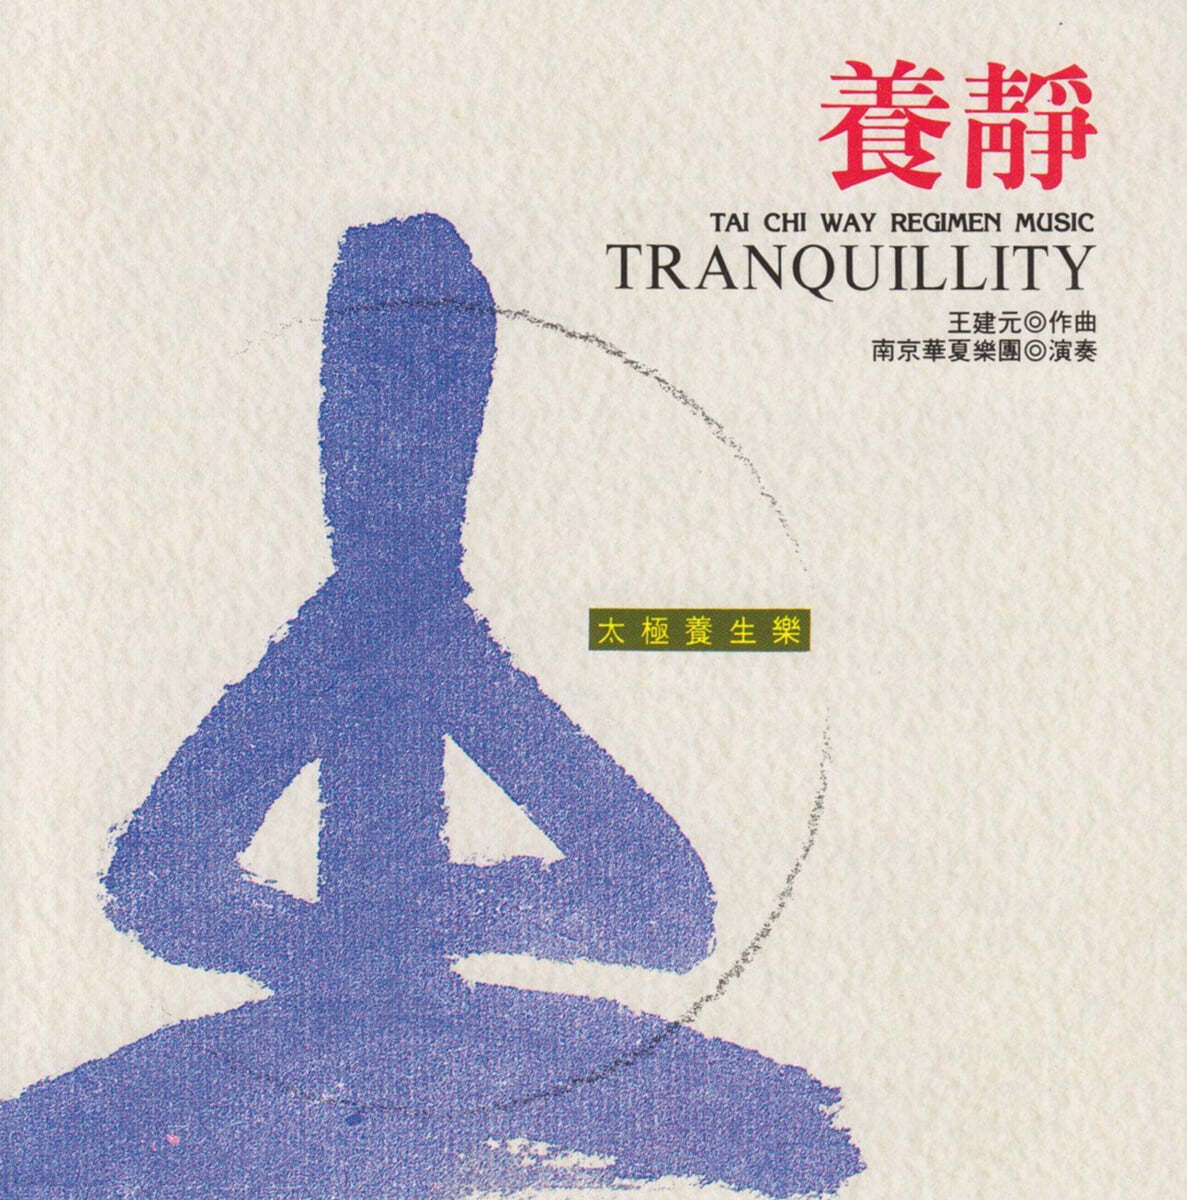 Nanjing Dynasty Orchestra 실용 건강음악 - 마음의 평온을 위한 음악 (Tai Chi Way Regimen Music - Tranquillity) 